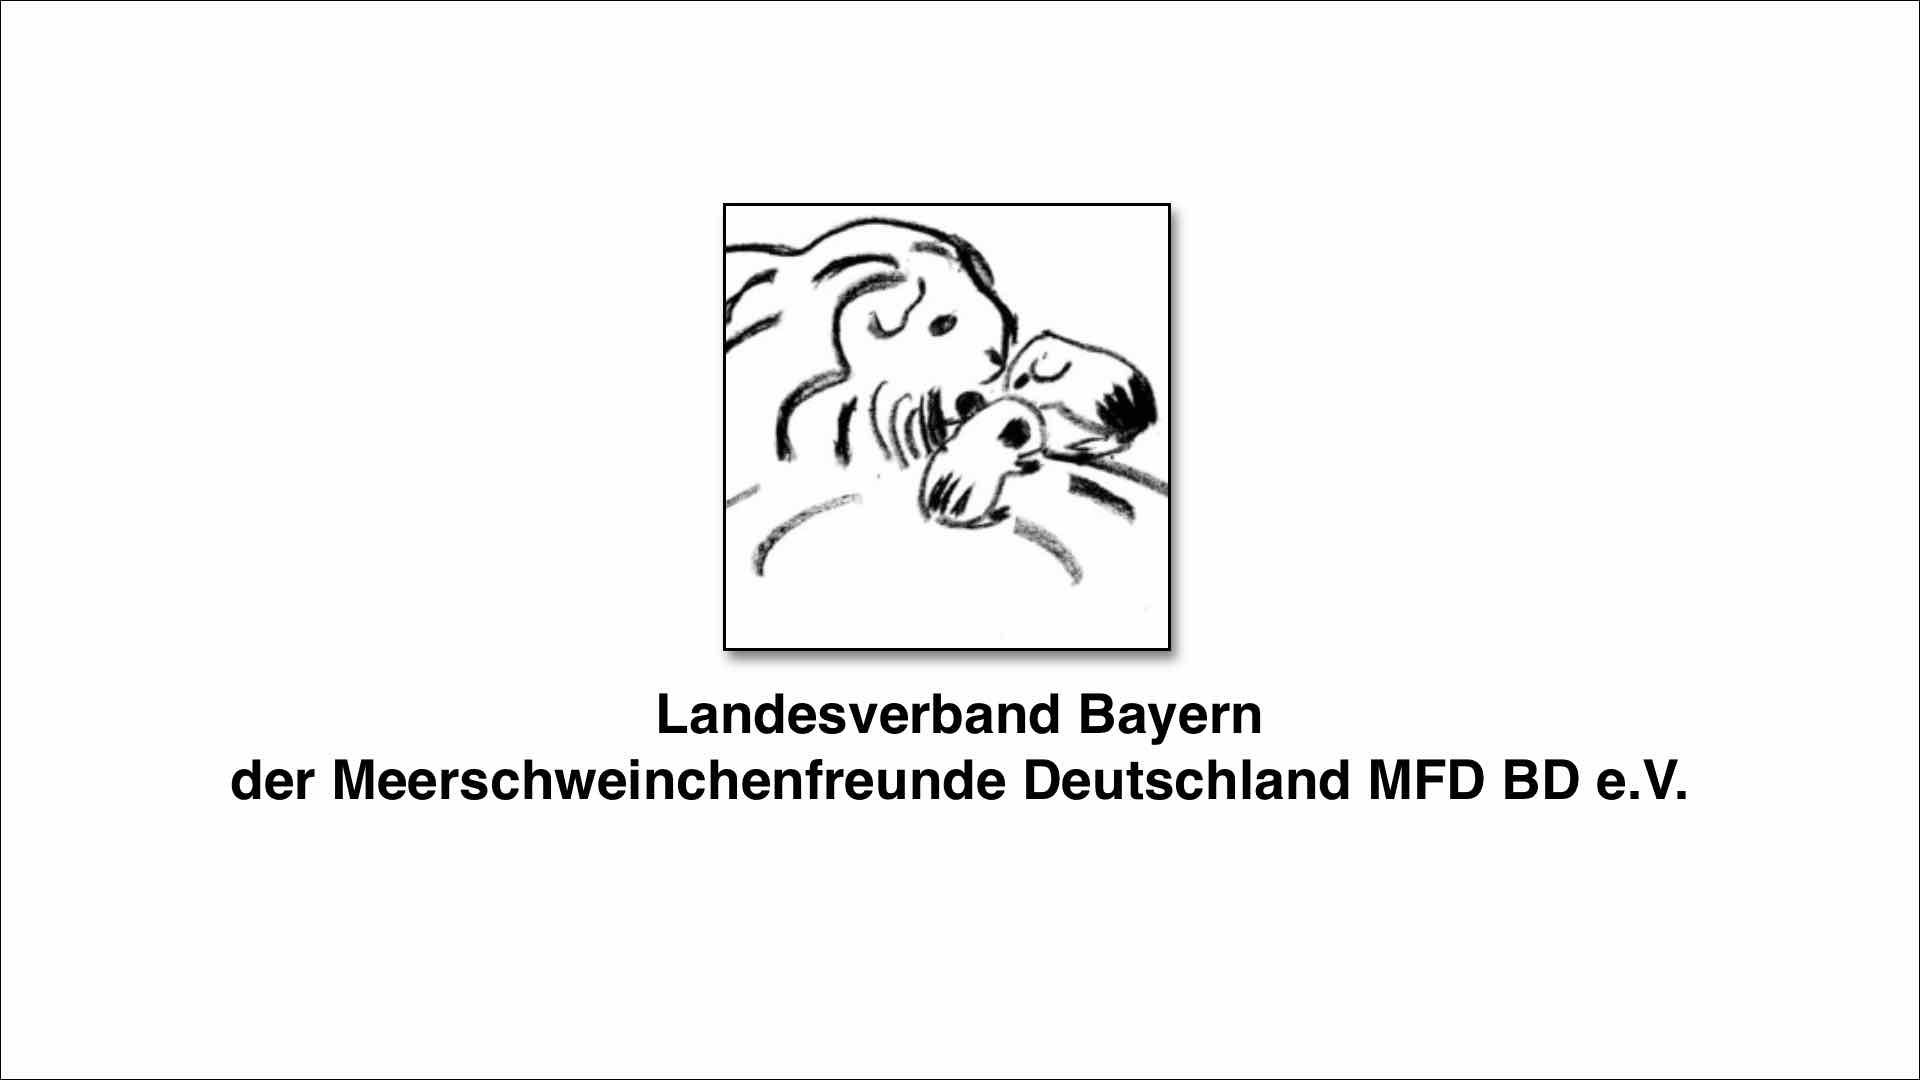 Landesverband Bayern der Meerschweinchenfreunde Deutschland MFD BD e.V.